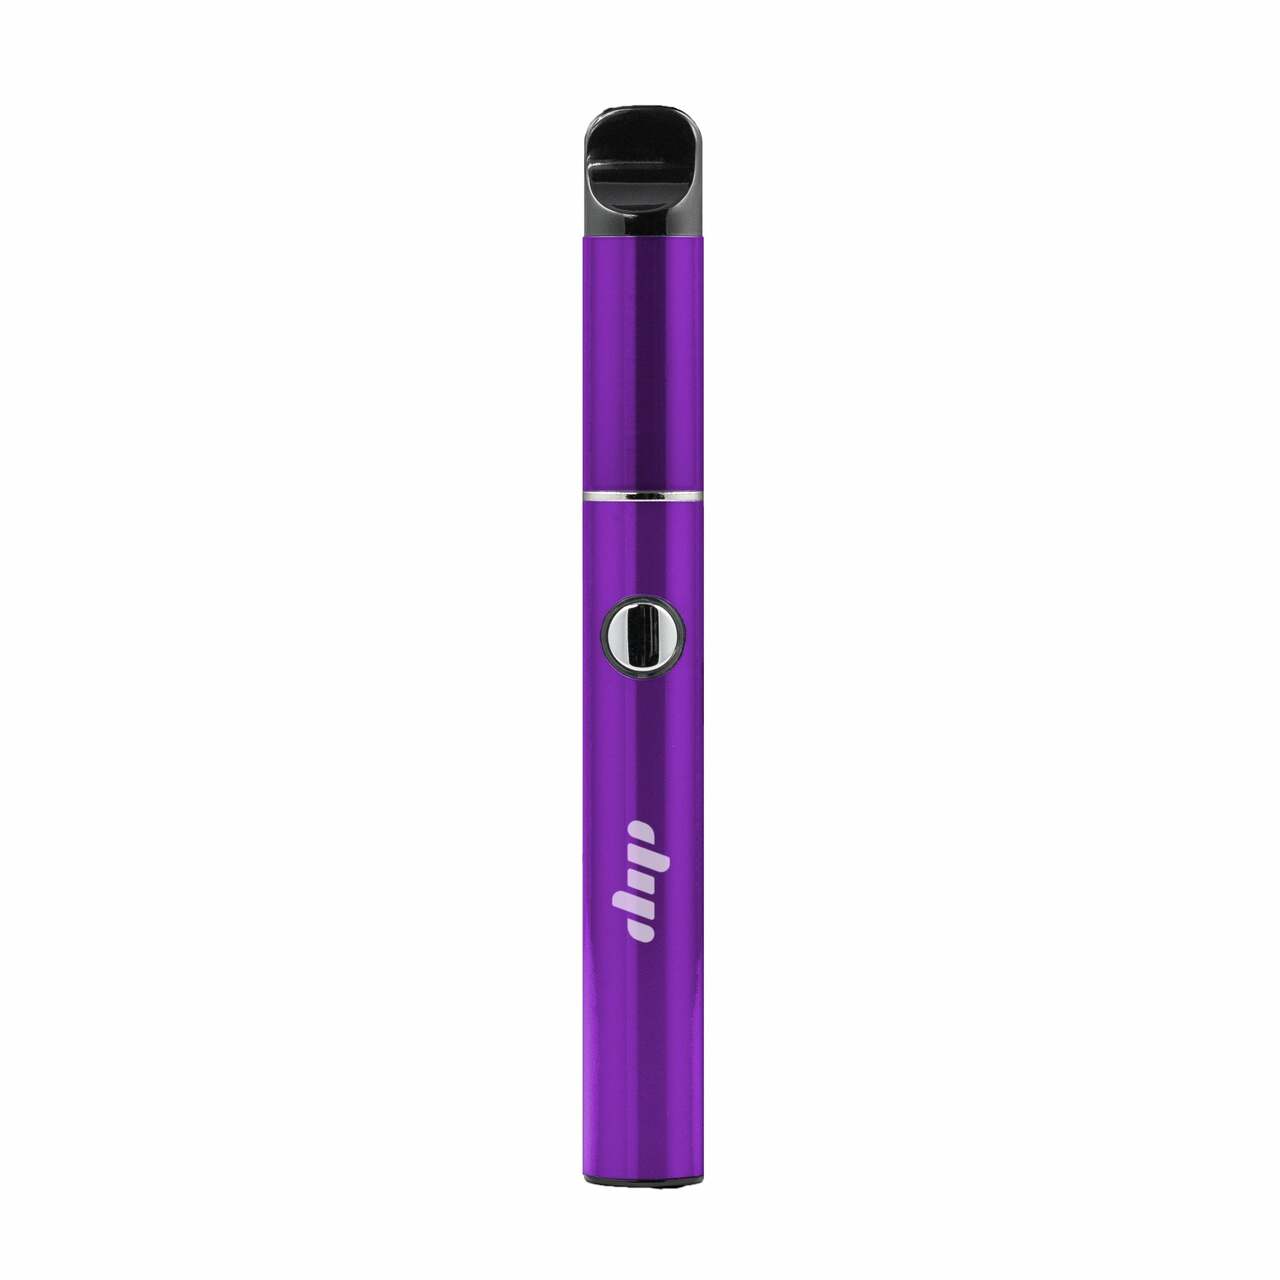 dip devices lunar vaporizer purple